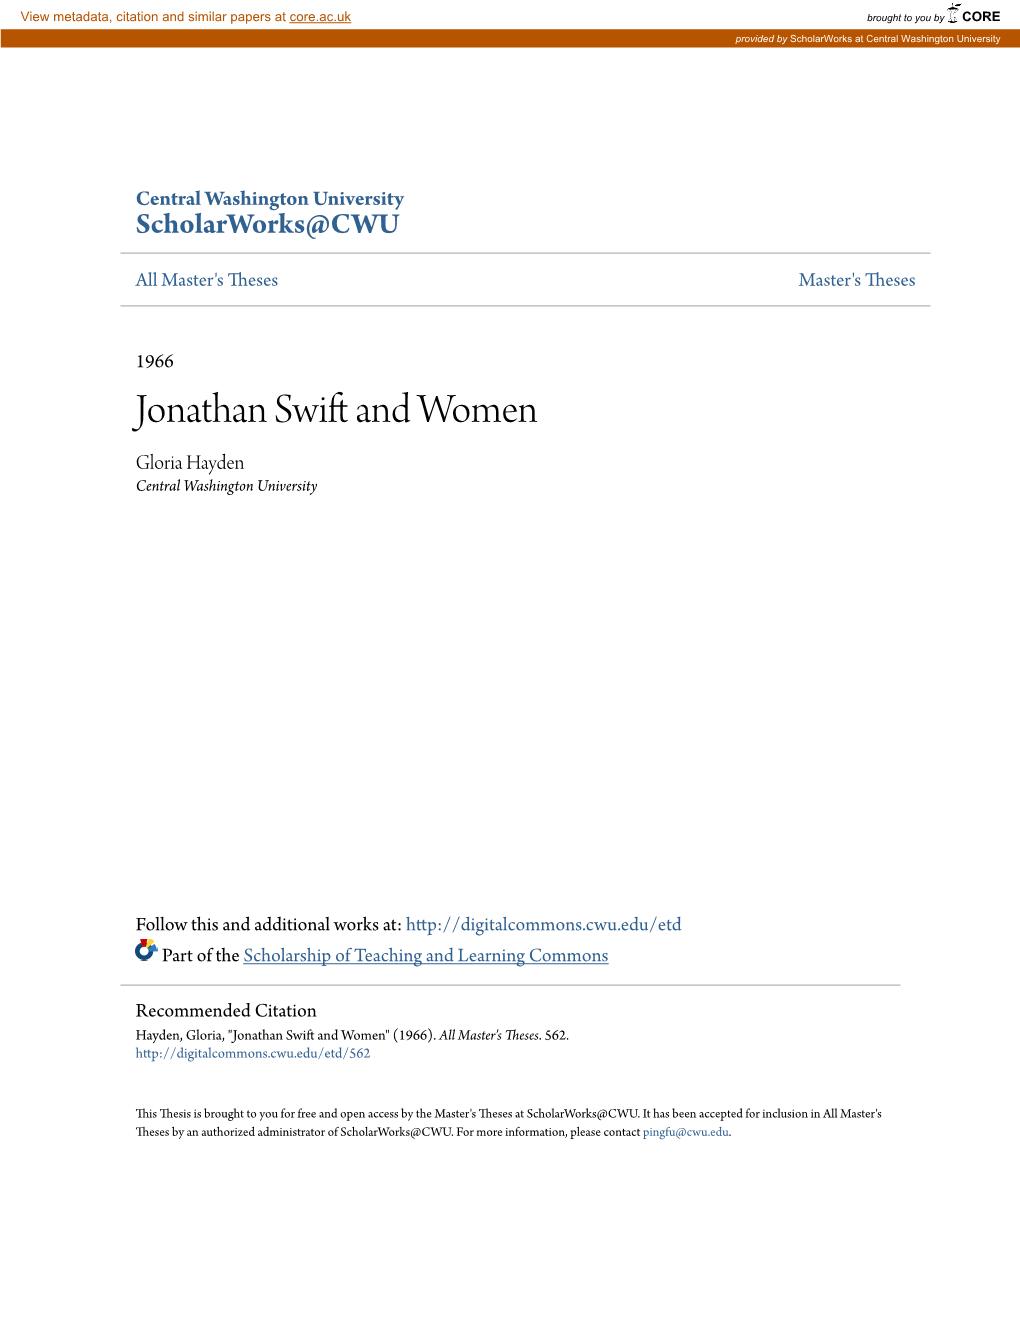 Jonathan Swift and Women